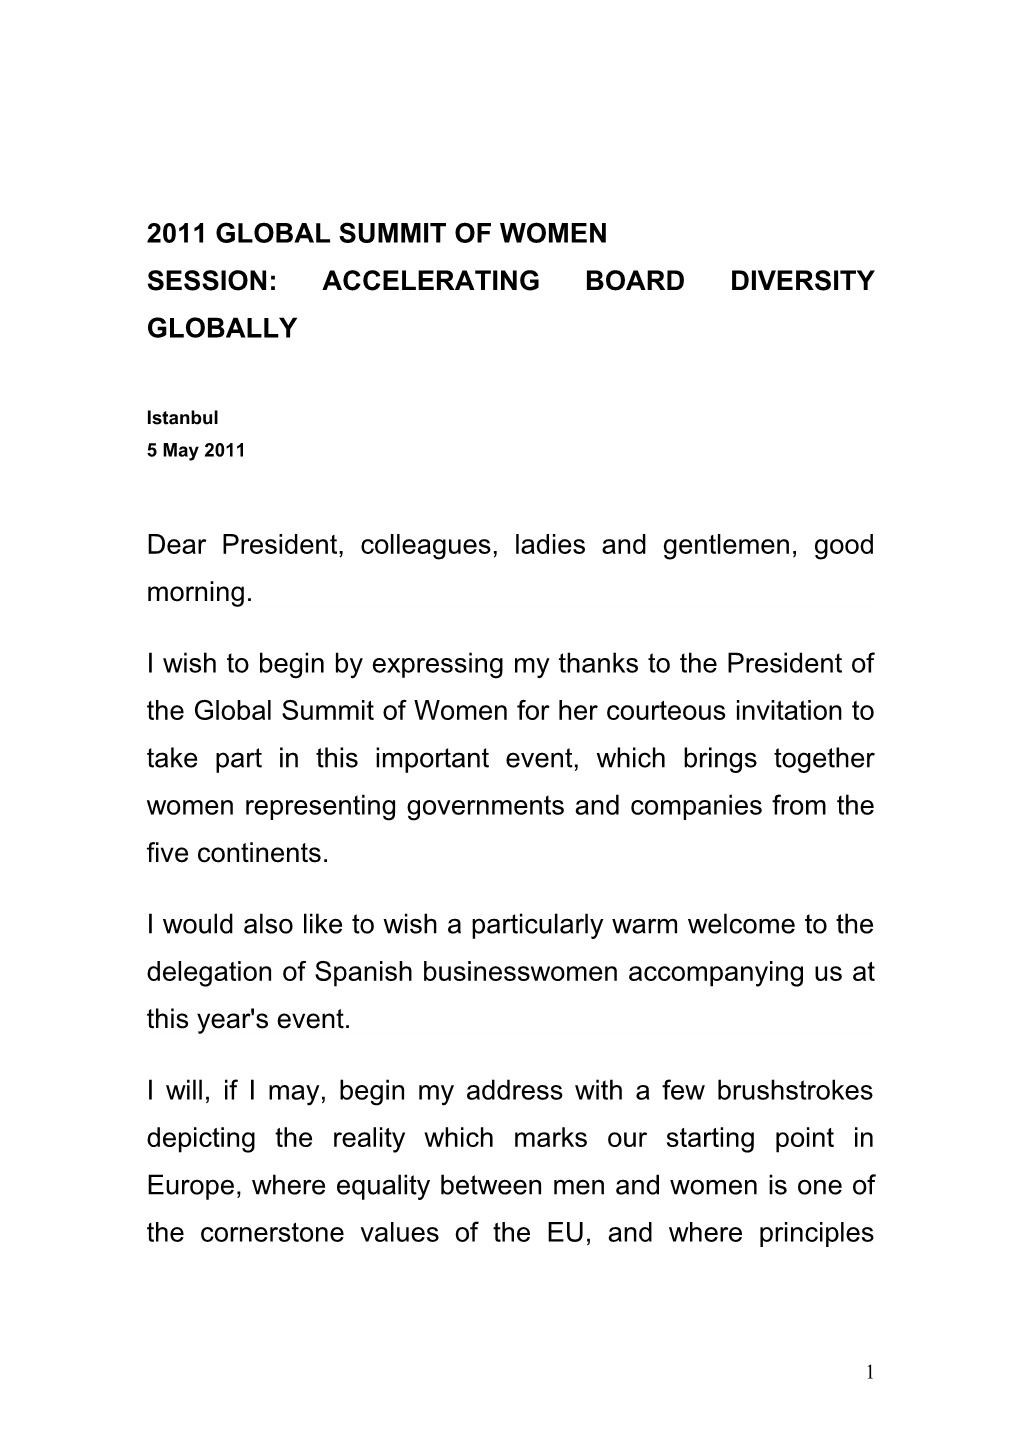 Intervención En La Cena-Coloquio Del Observatorio Colón: La Igualdad En La Empresa Española